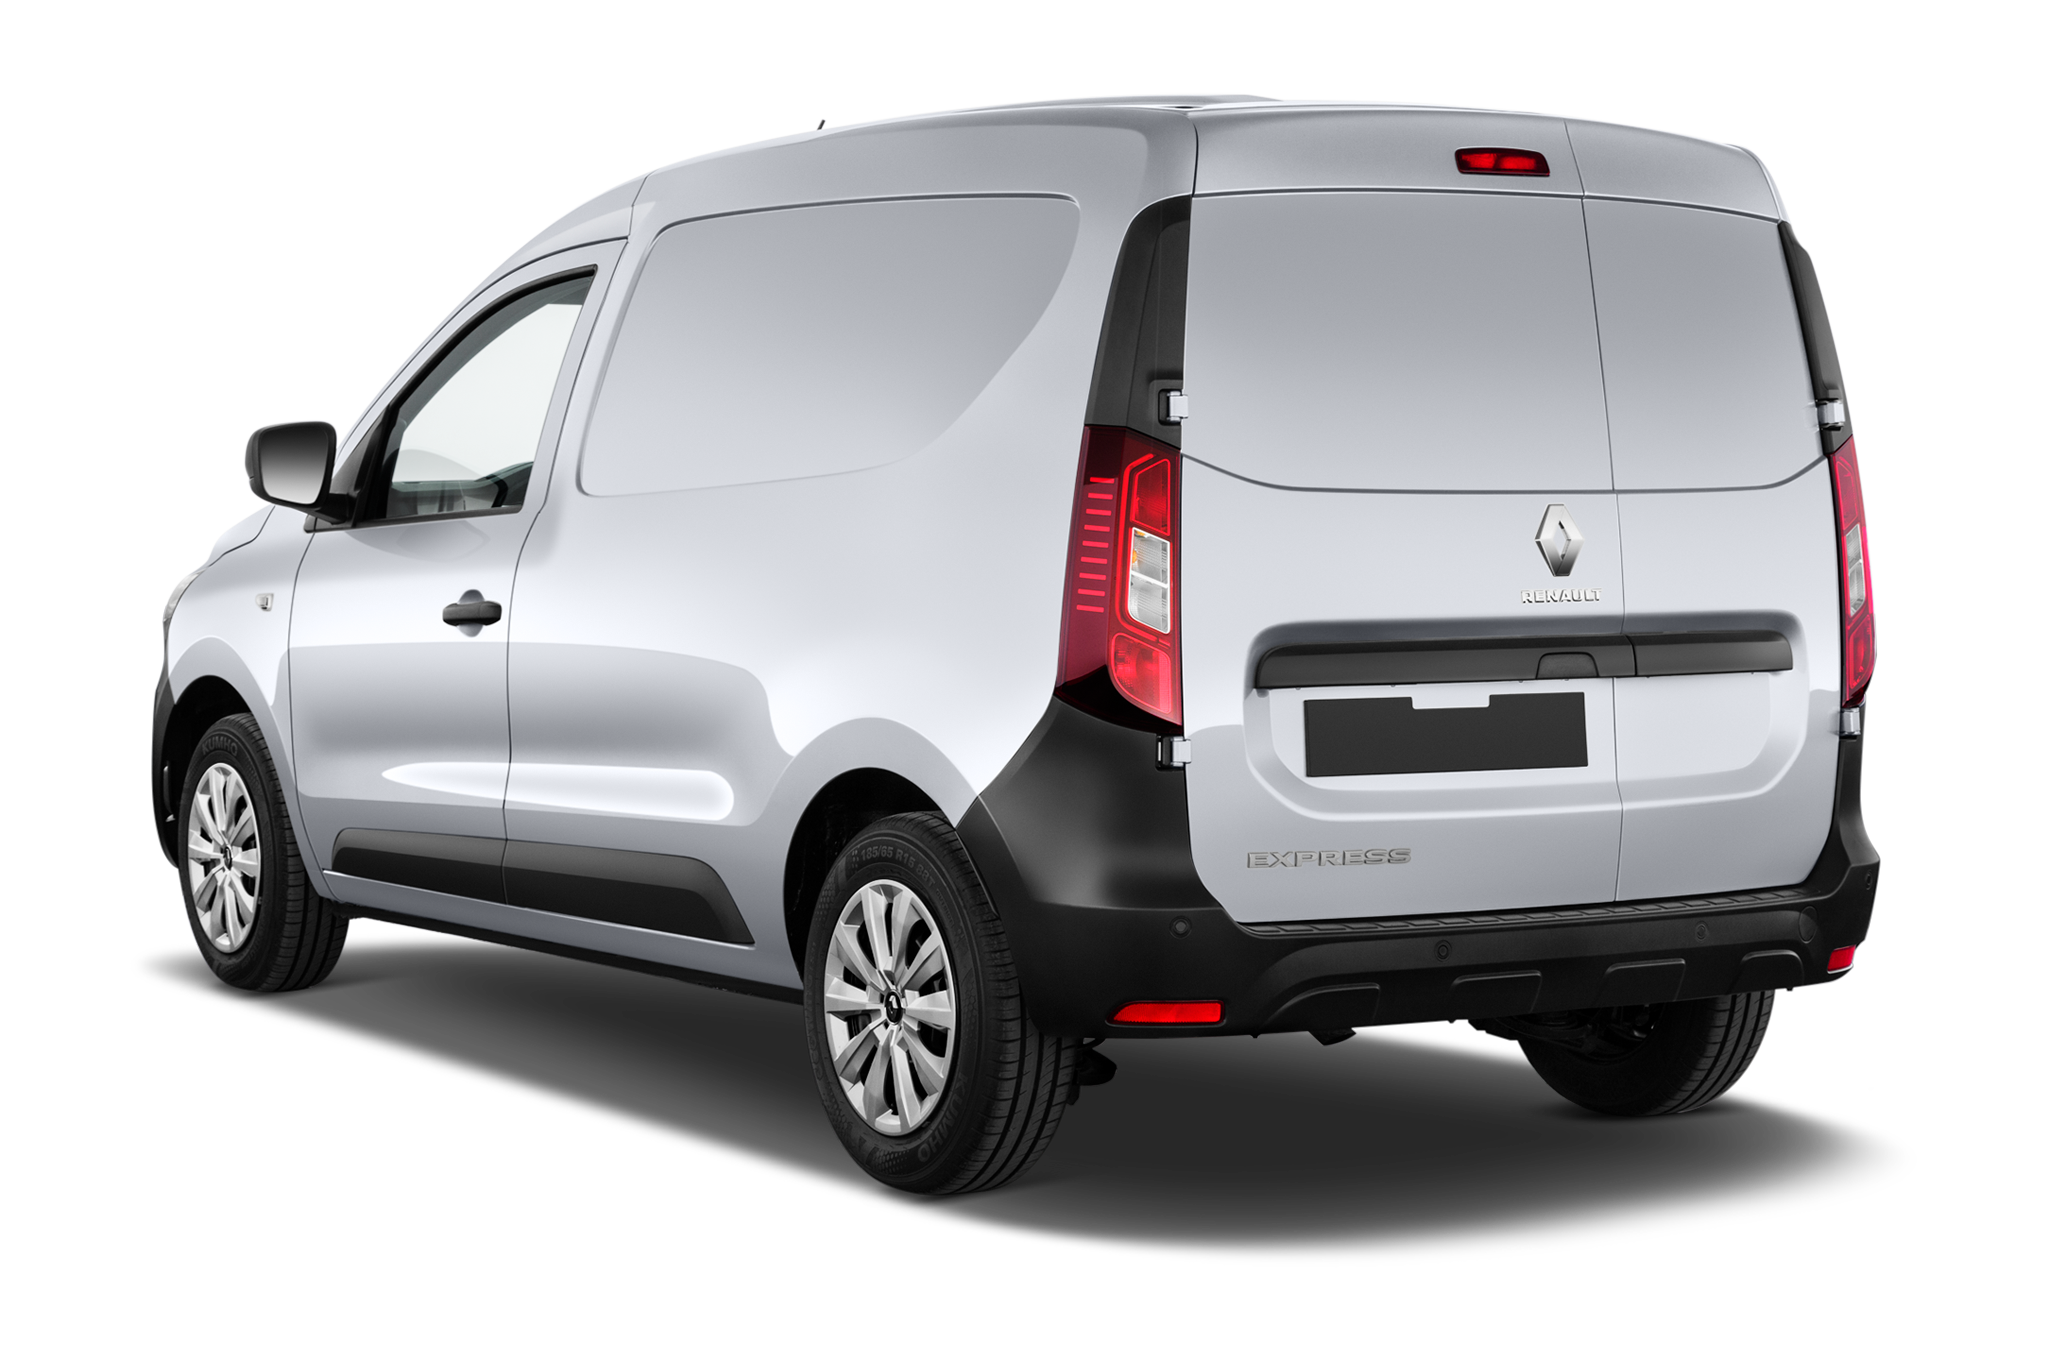 Renault Express Van (Baujahr 2022) Basis Regular Cab 4 Türen seitlich hinten